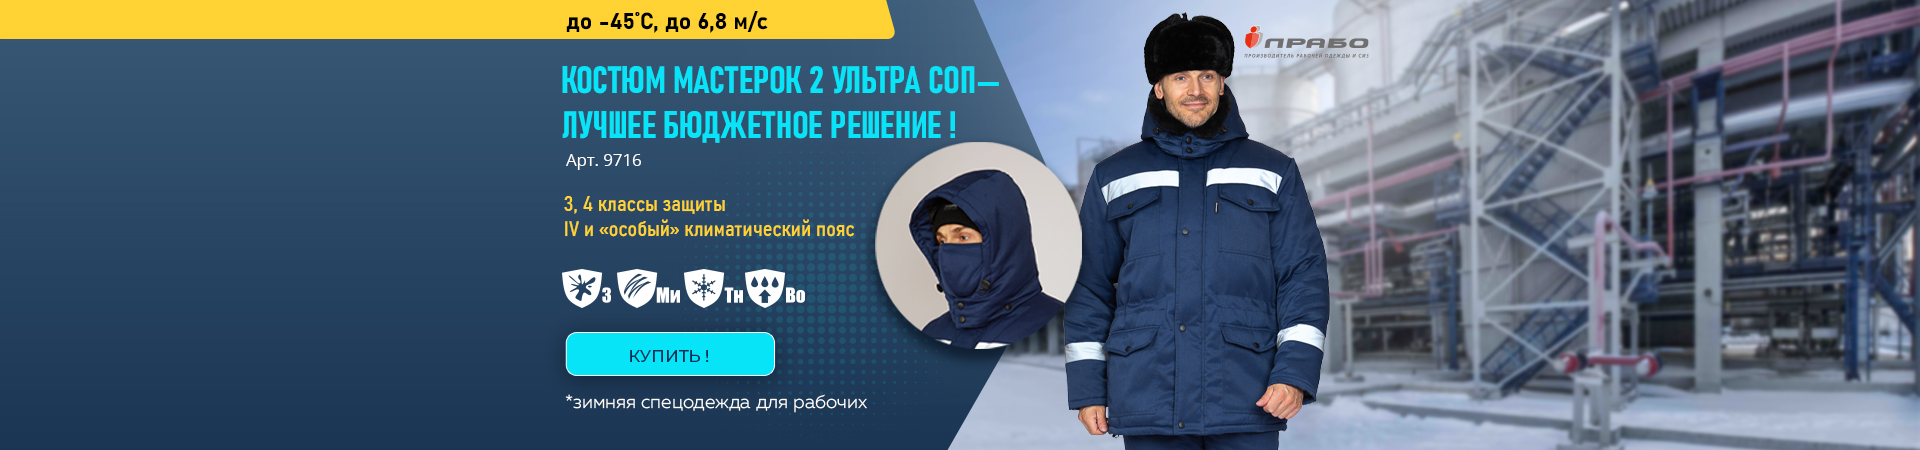 Зимний рабочий костюм Мастерок 2 Ультра – по выгодной цене для комфортной работы!